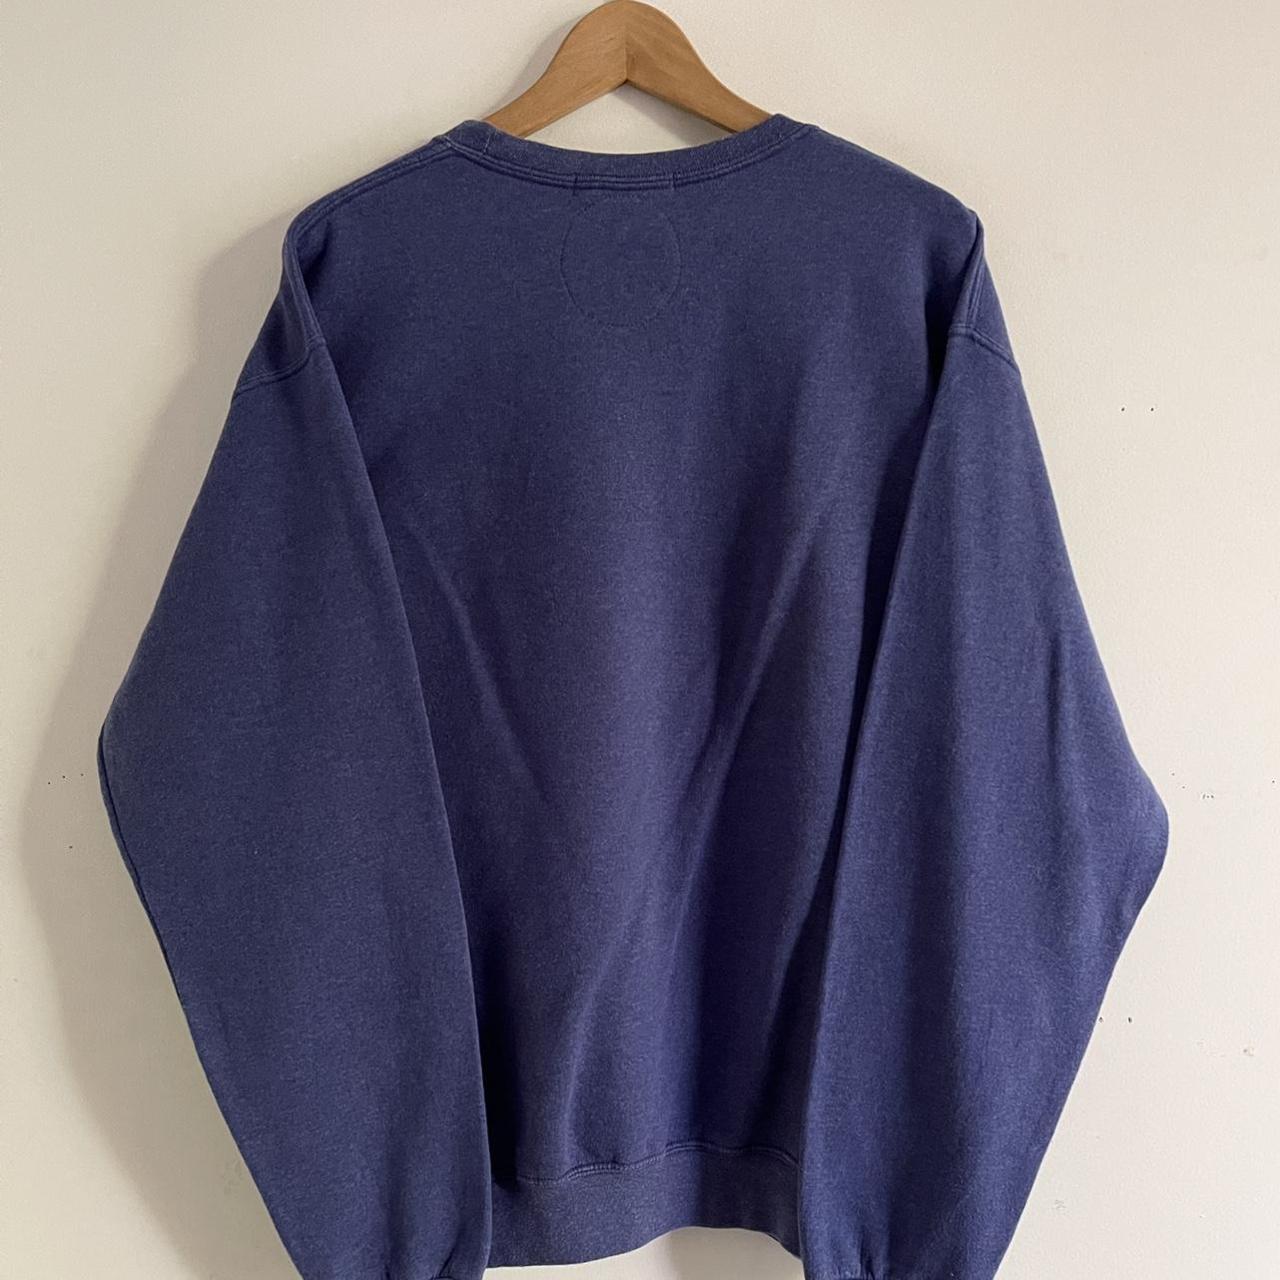 Model: Nike Rework Vintage Sweatshirt /... - Depop